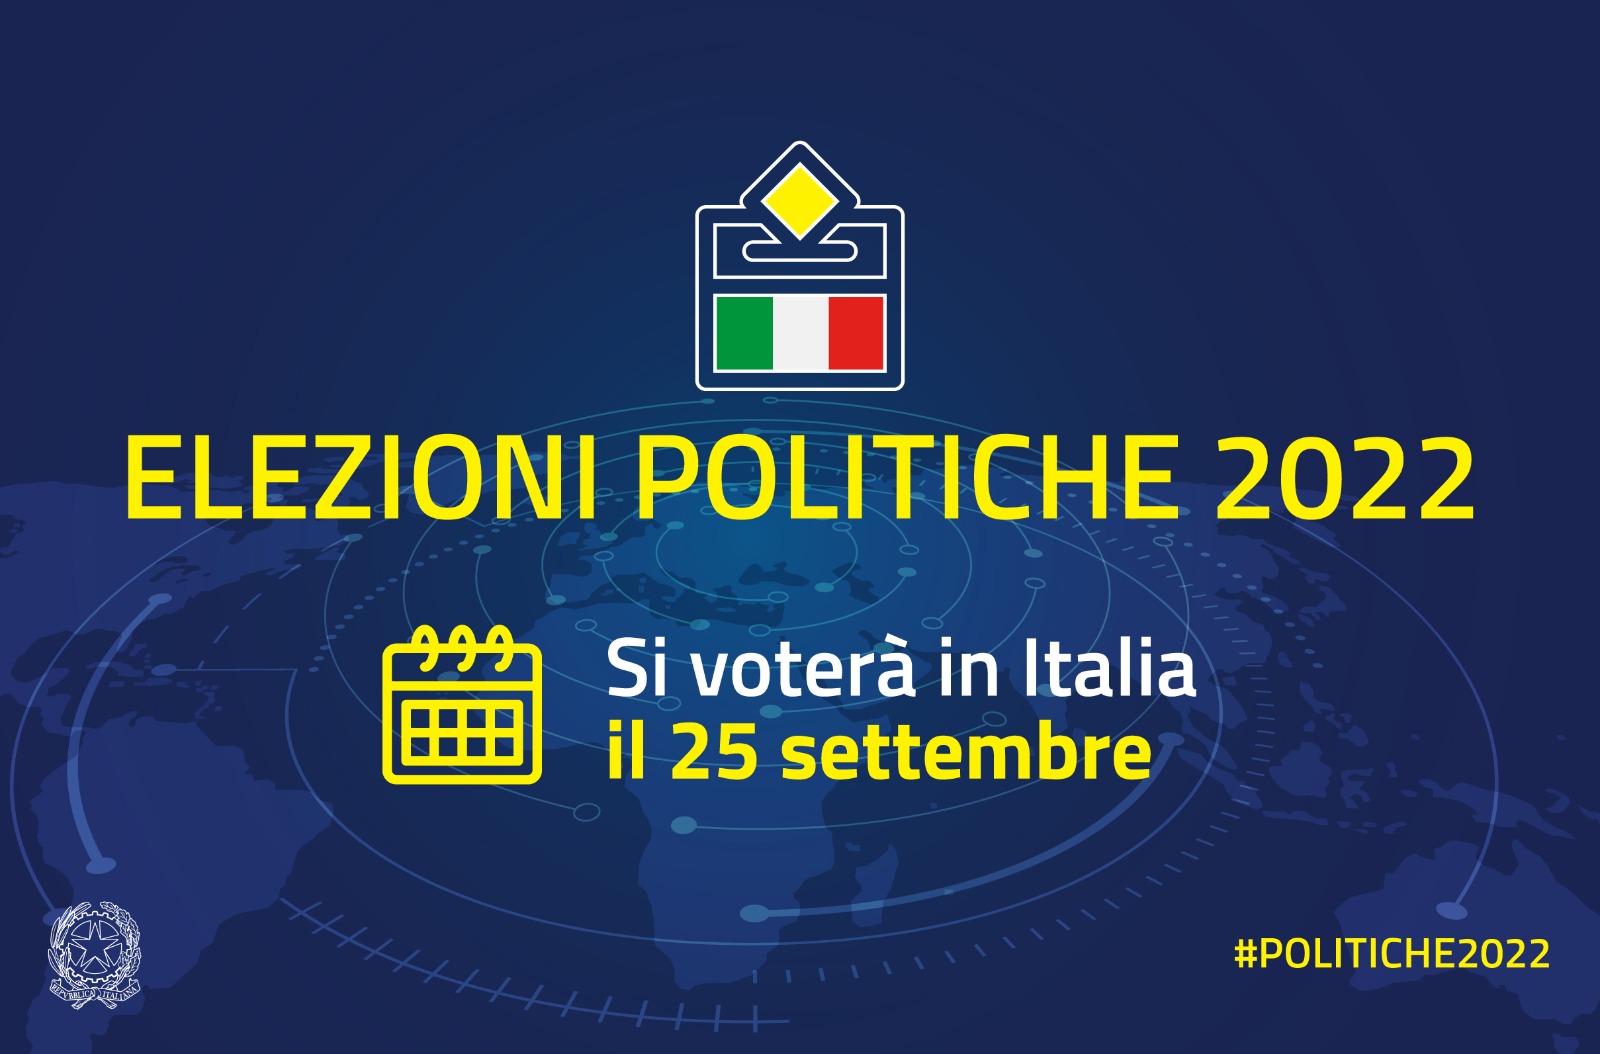 Elezioni Politiche 2022: voto elettori italiani residenti temporaneamente all'estero